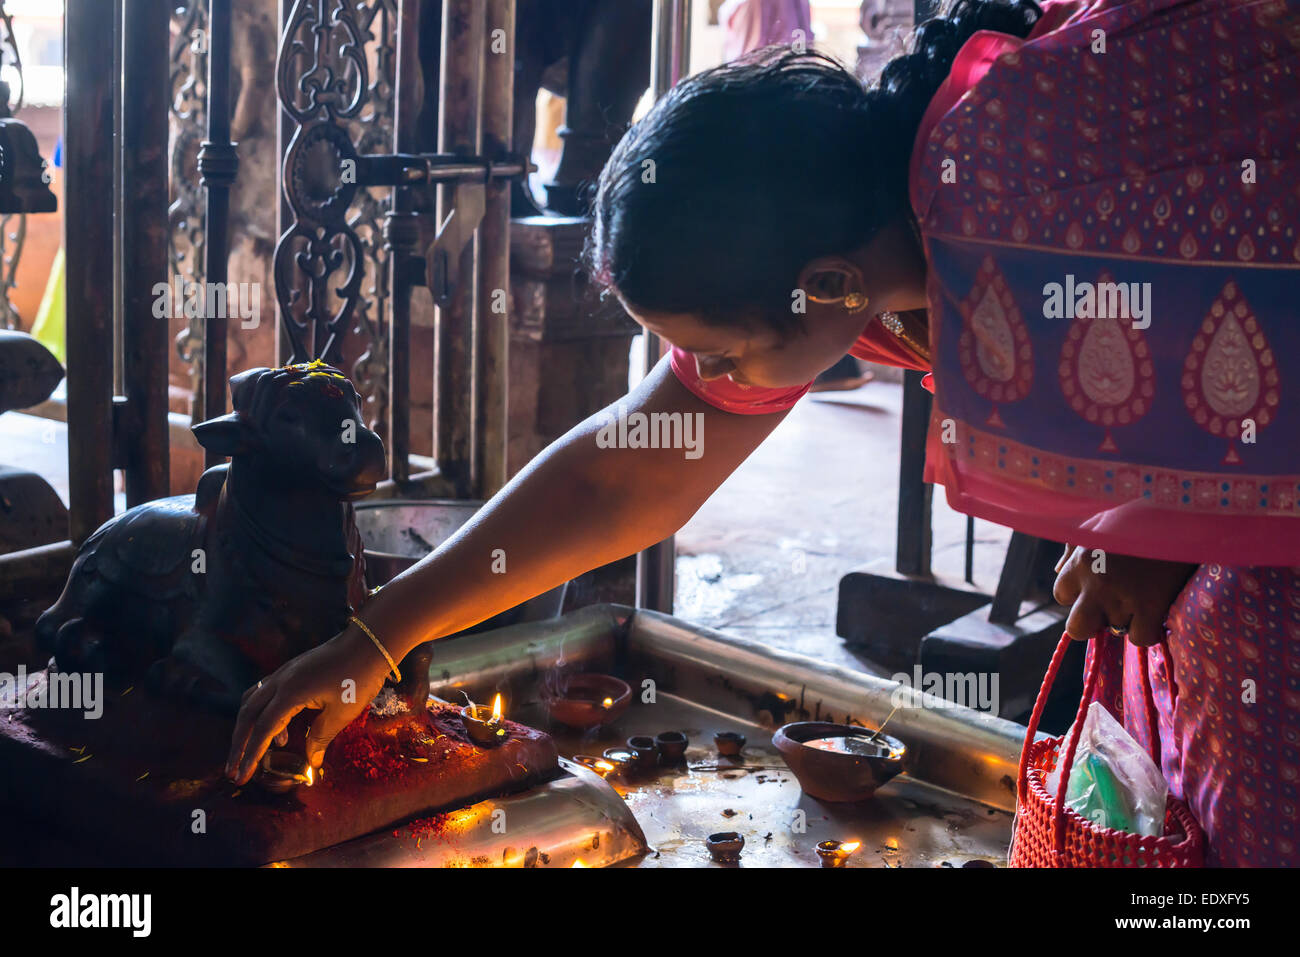 MADURAI, India - 16 febbraio: una donna non identificato commette azioni rituali presso Sri Meenakshi Amman Tempio. India, nello Stato del Tamil Nadu, Mad Foto Stock